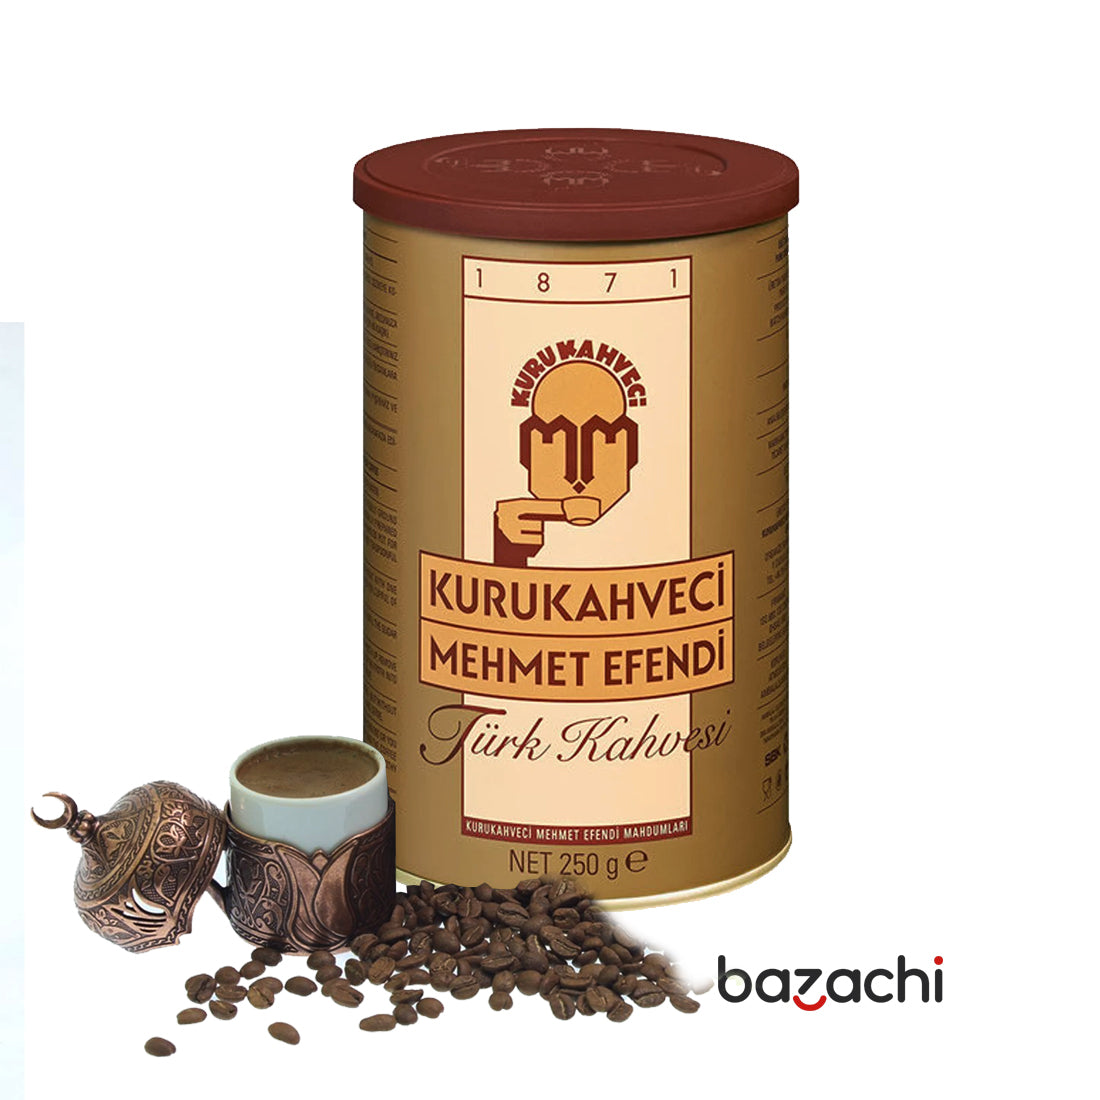 Kuru Kahveci Mehmet Efendi Original Turkish Coffee - 250g